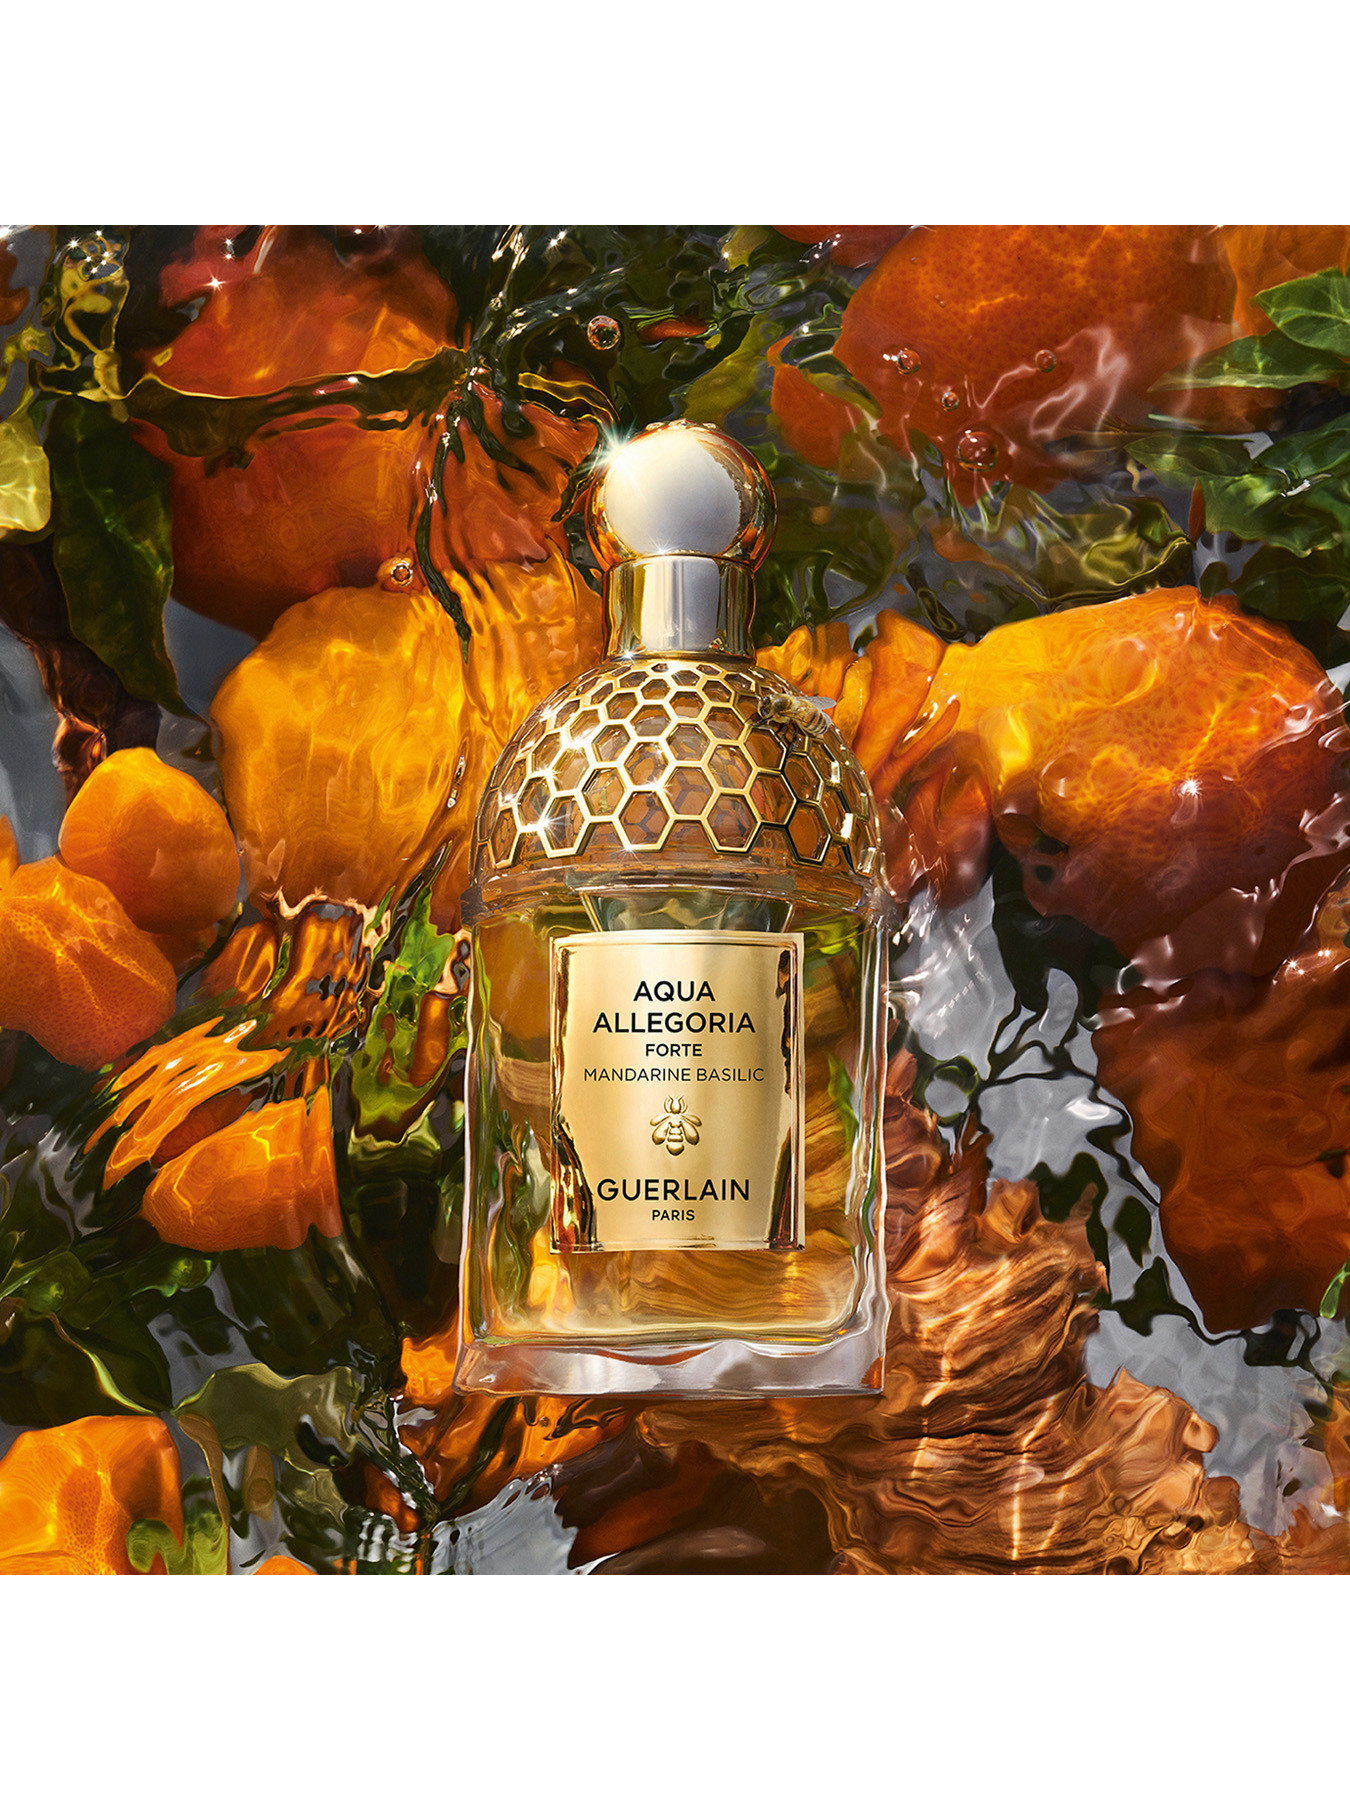 Guerlain Aqua Allegoria Forte Mandarine Basilic Eau de Parfum 125ml |  Fenwick